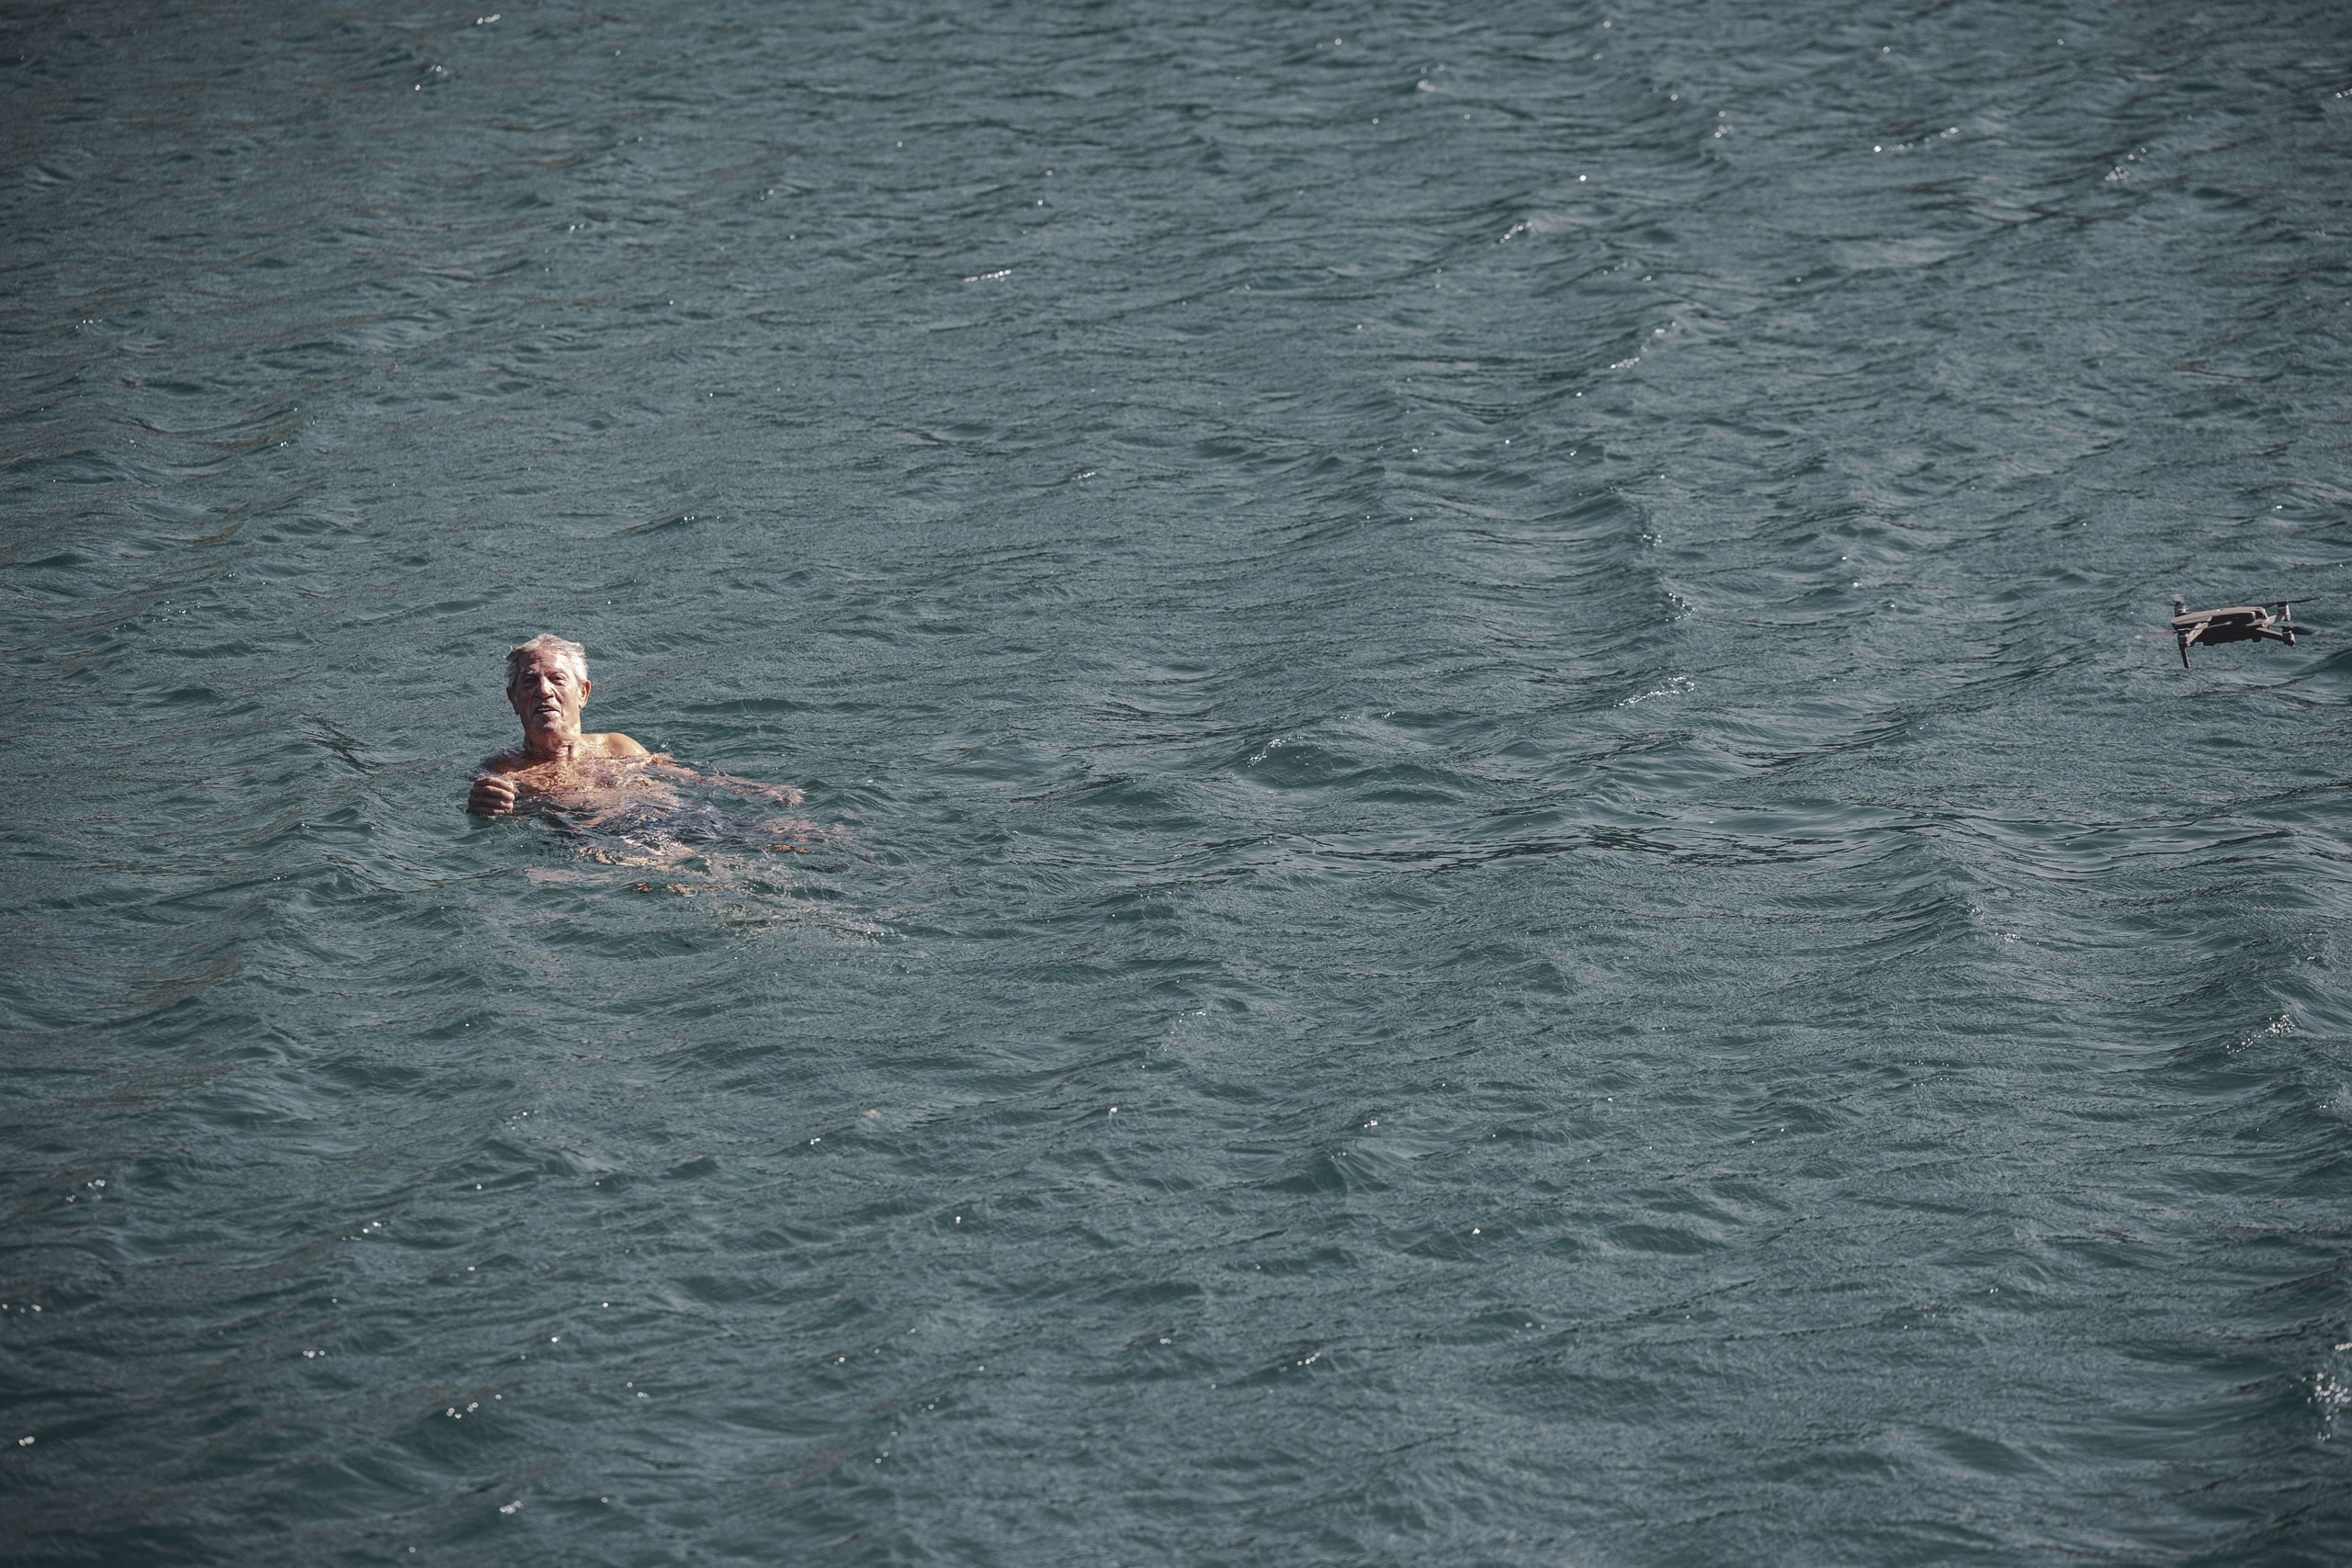 Eine Person schwimmt in einem Gewässer mit einem dunkelblauen Farbton, begleitet von einem kleinen, schwimmenden Vogel in der Nähe rechts. Das Wasser ist leicht gekräuselt und reflektiert Licht. © Fotografie Tomas Rodriguez